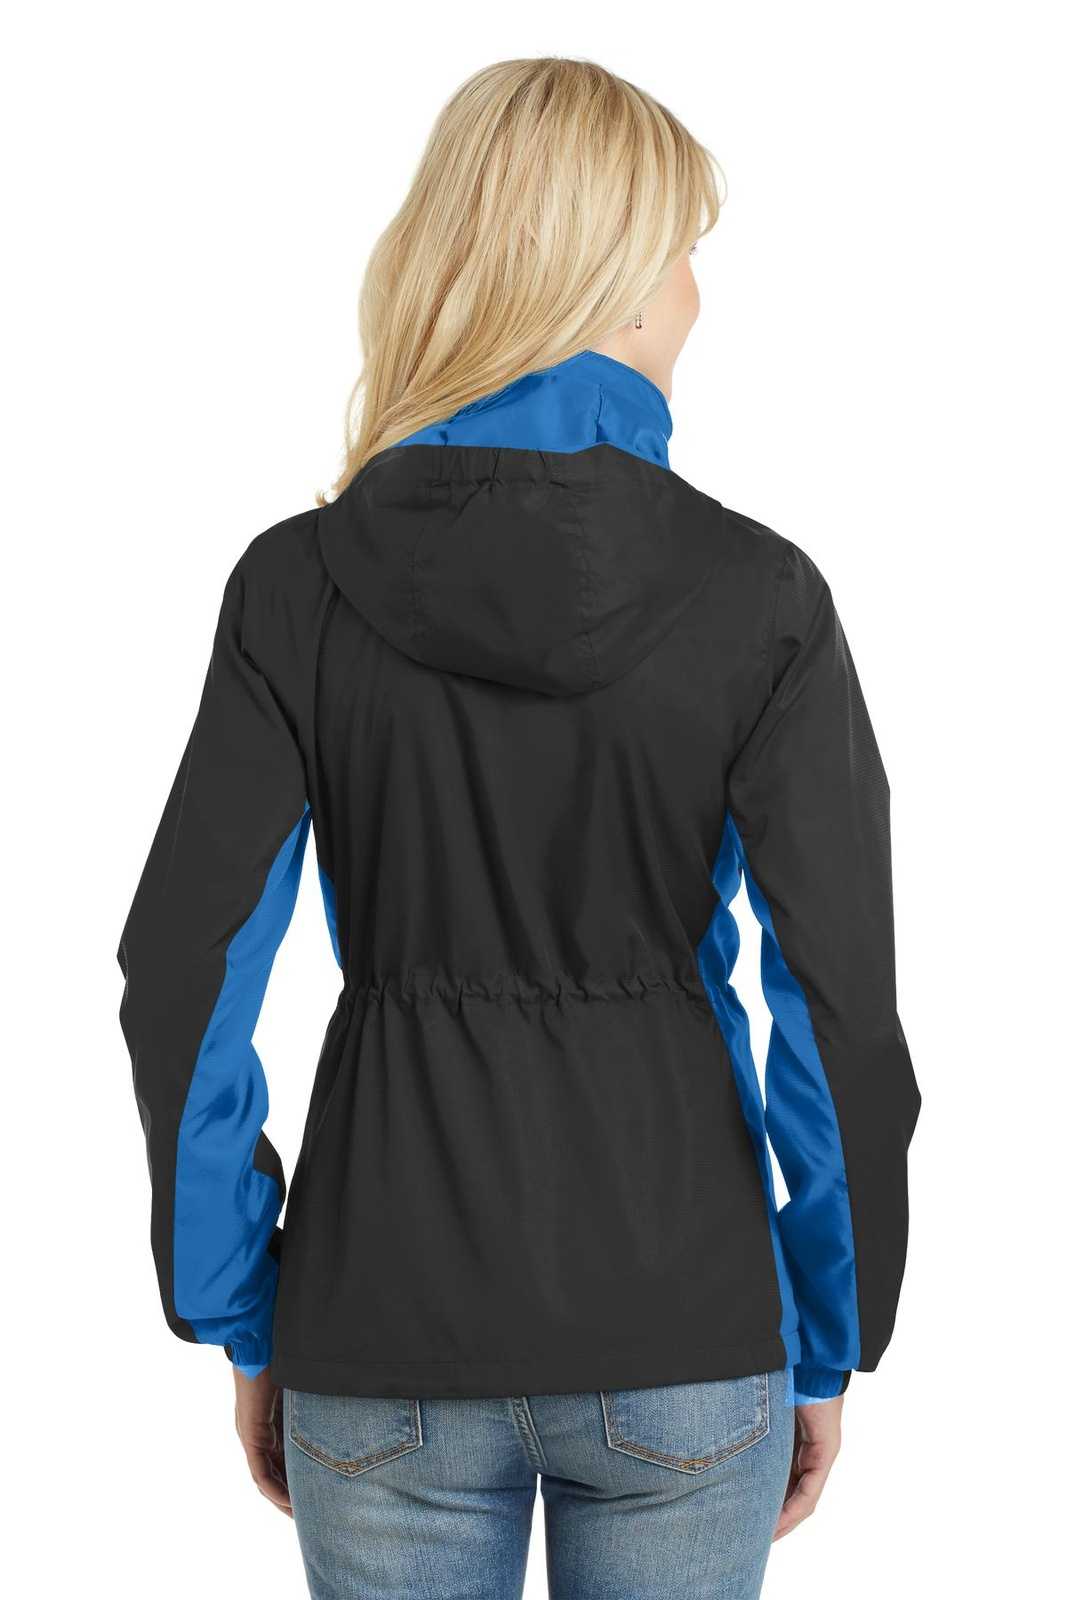 Port Authority L330 Ladies Core Colorblock Wind Jacket - Black Imperial Blue - HIT a Double - 2